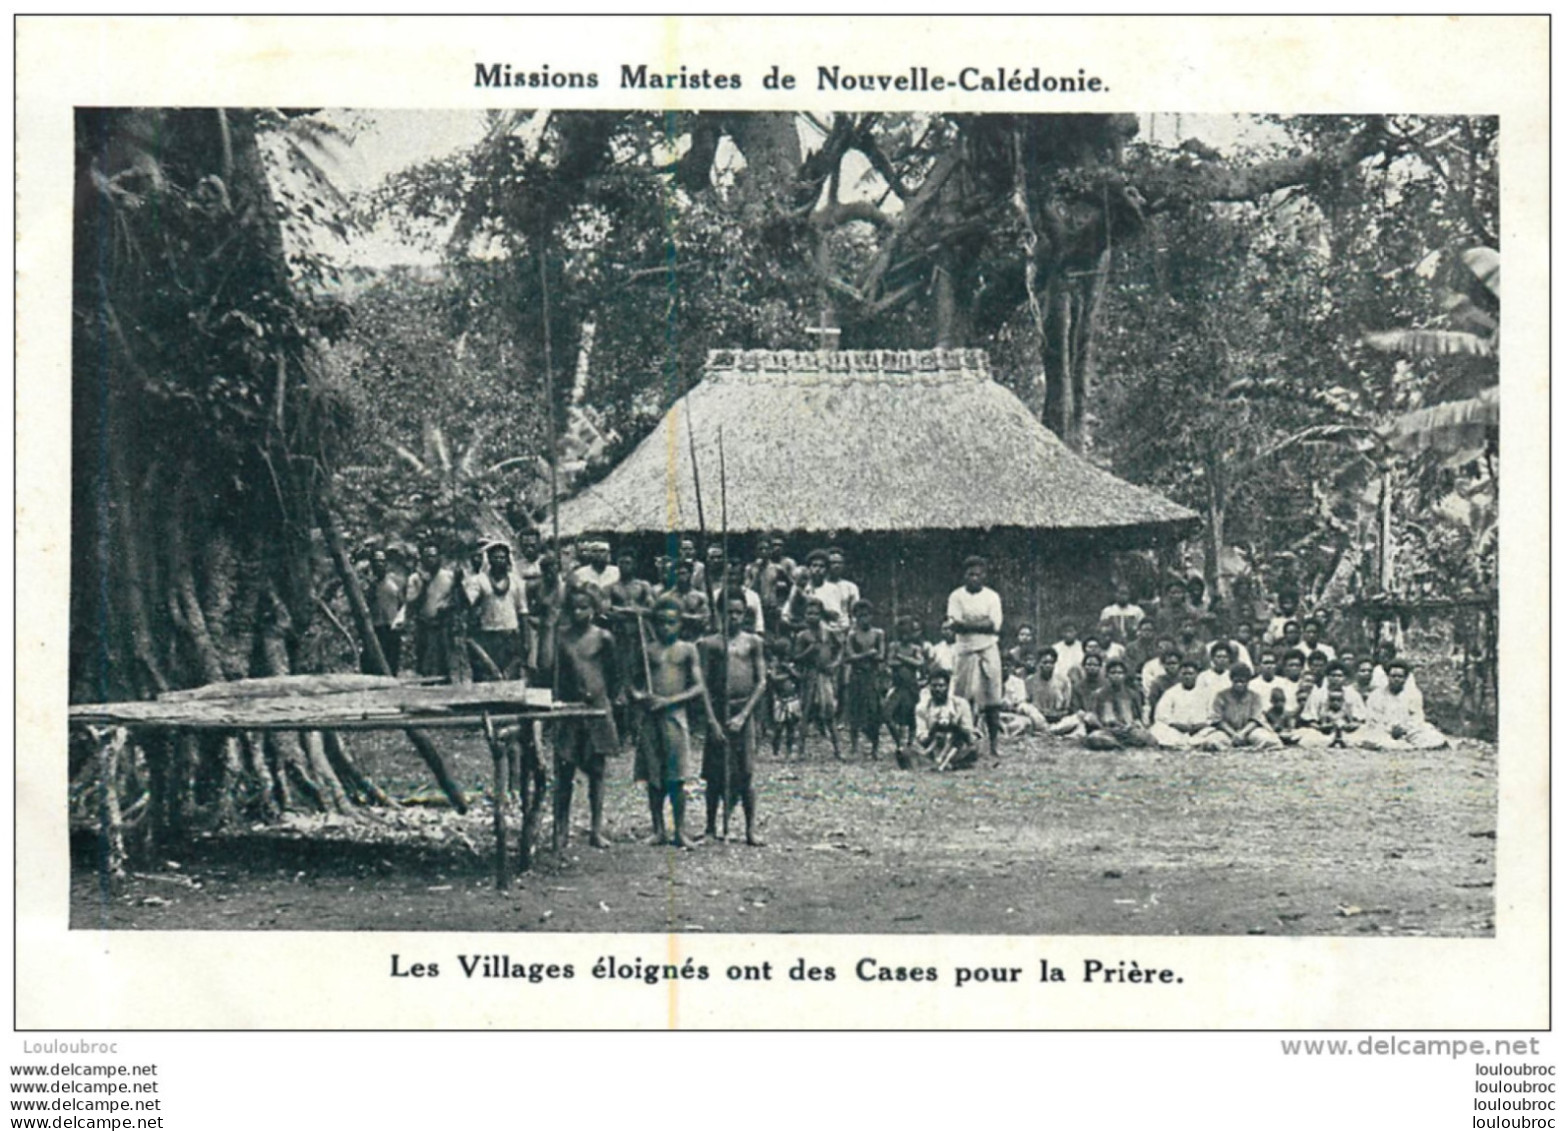 MISSIONS MARISTES DE NOUVELLE CALEDONIE LES VILLAGES ELOIGNES ONT DES CASES POUR LA PRIERE - New Caledonia